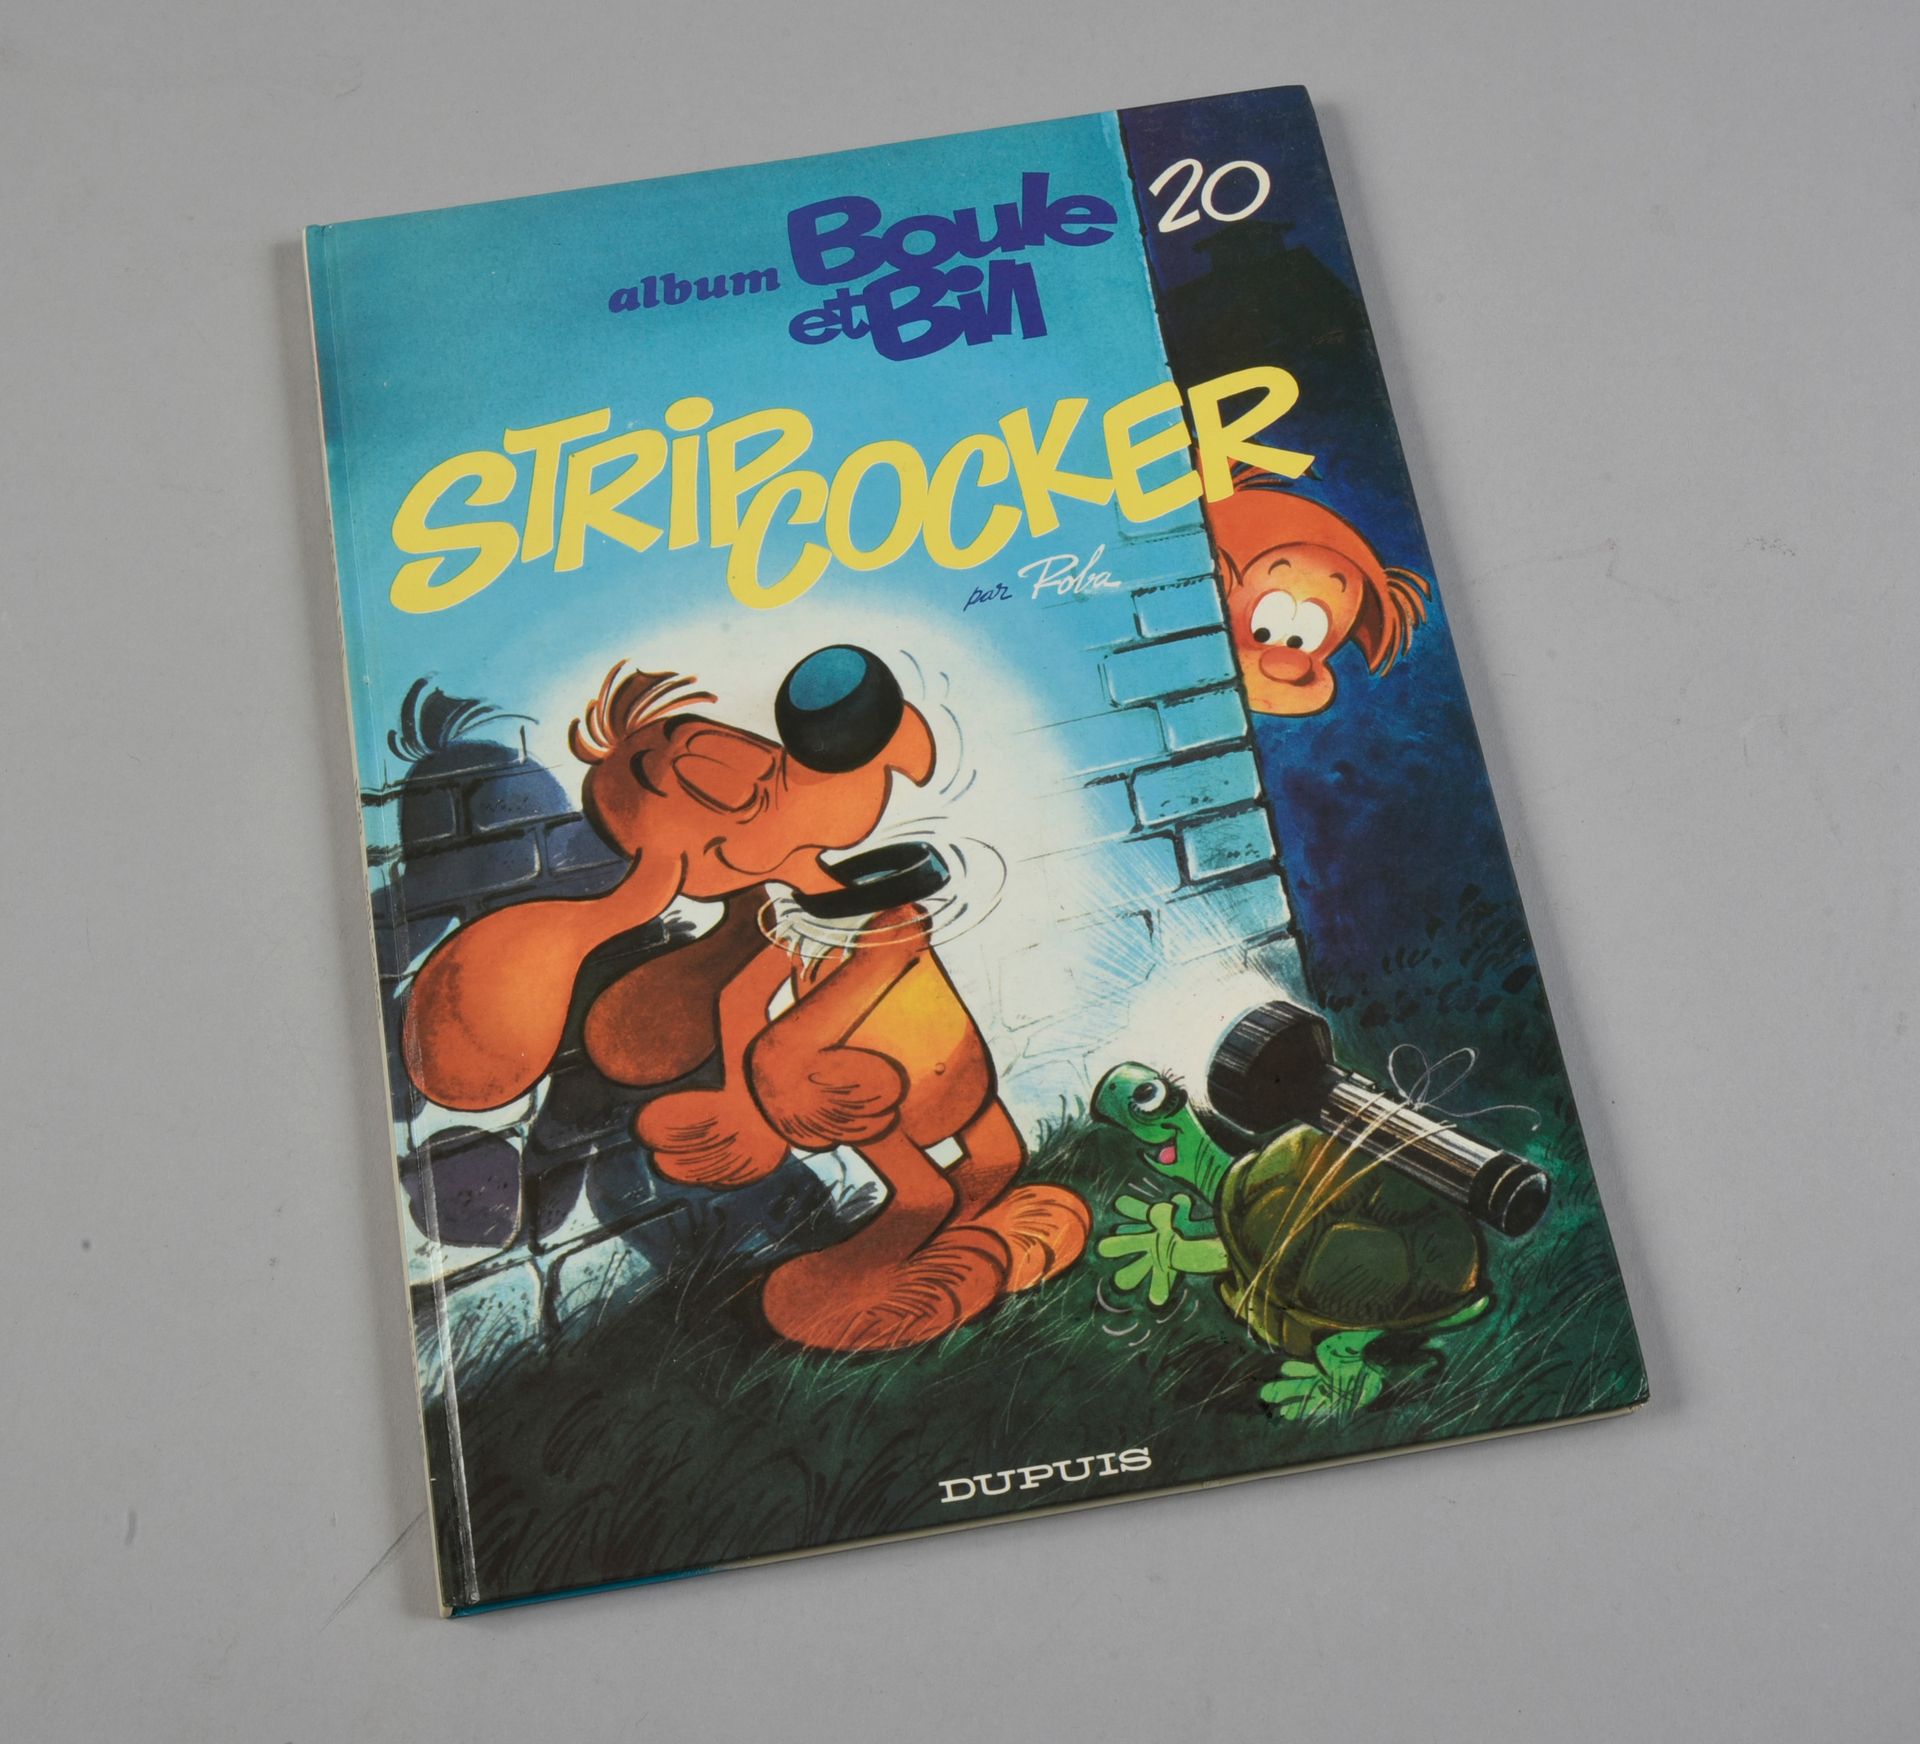 ROBA BOULE ET BILL. Stripcocker. Edition DUPUIS 1984, agrémentée d'un dessin déd&hellip;